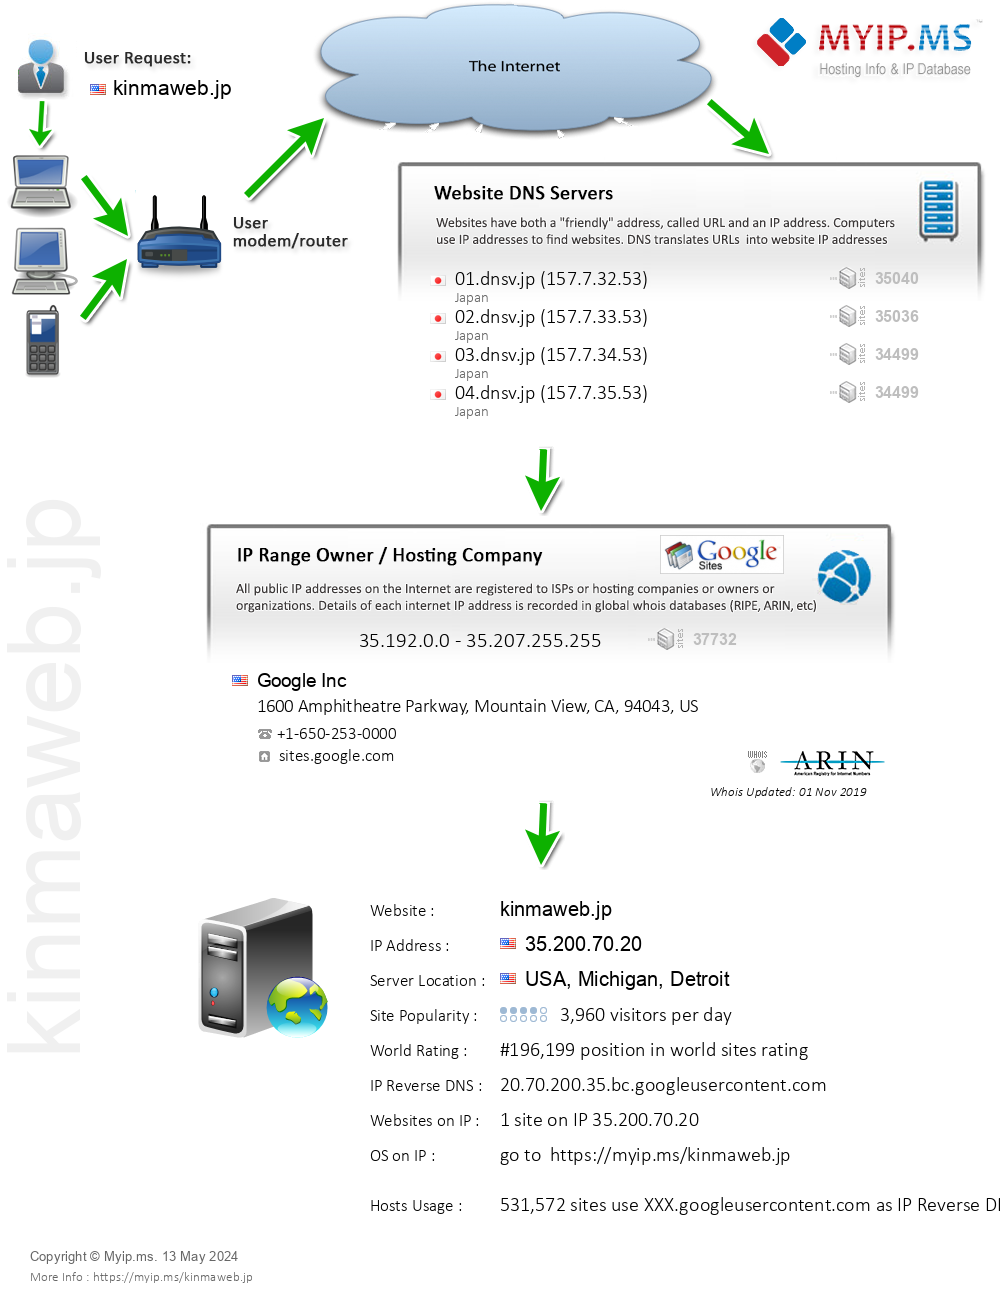 Kinmaweb.jp - Website Hosting Visual IP Diagram